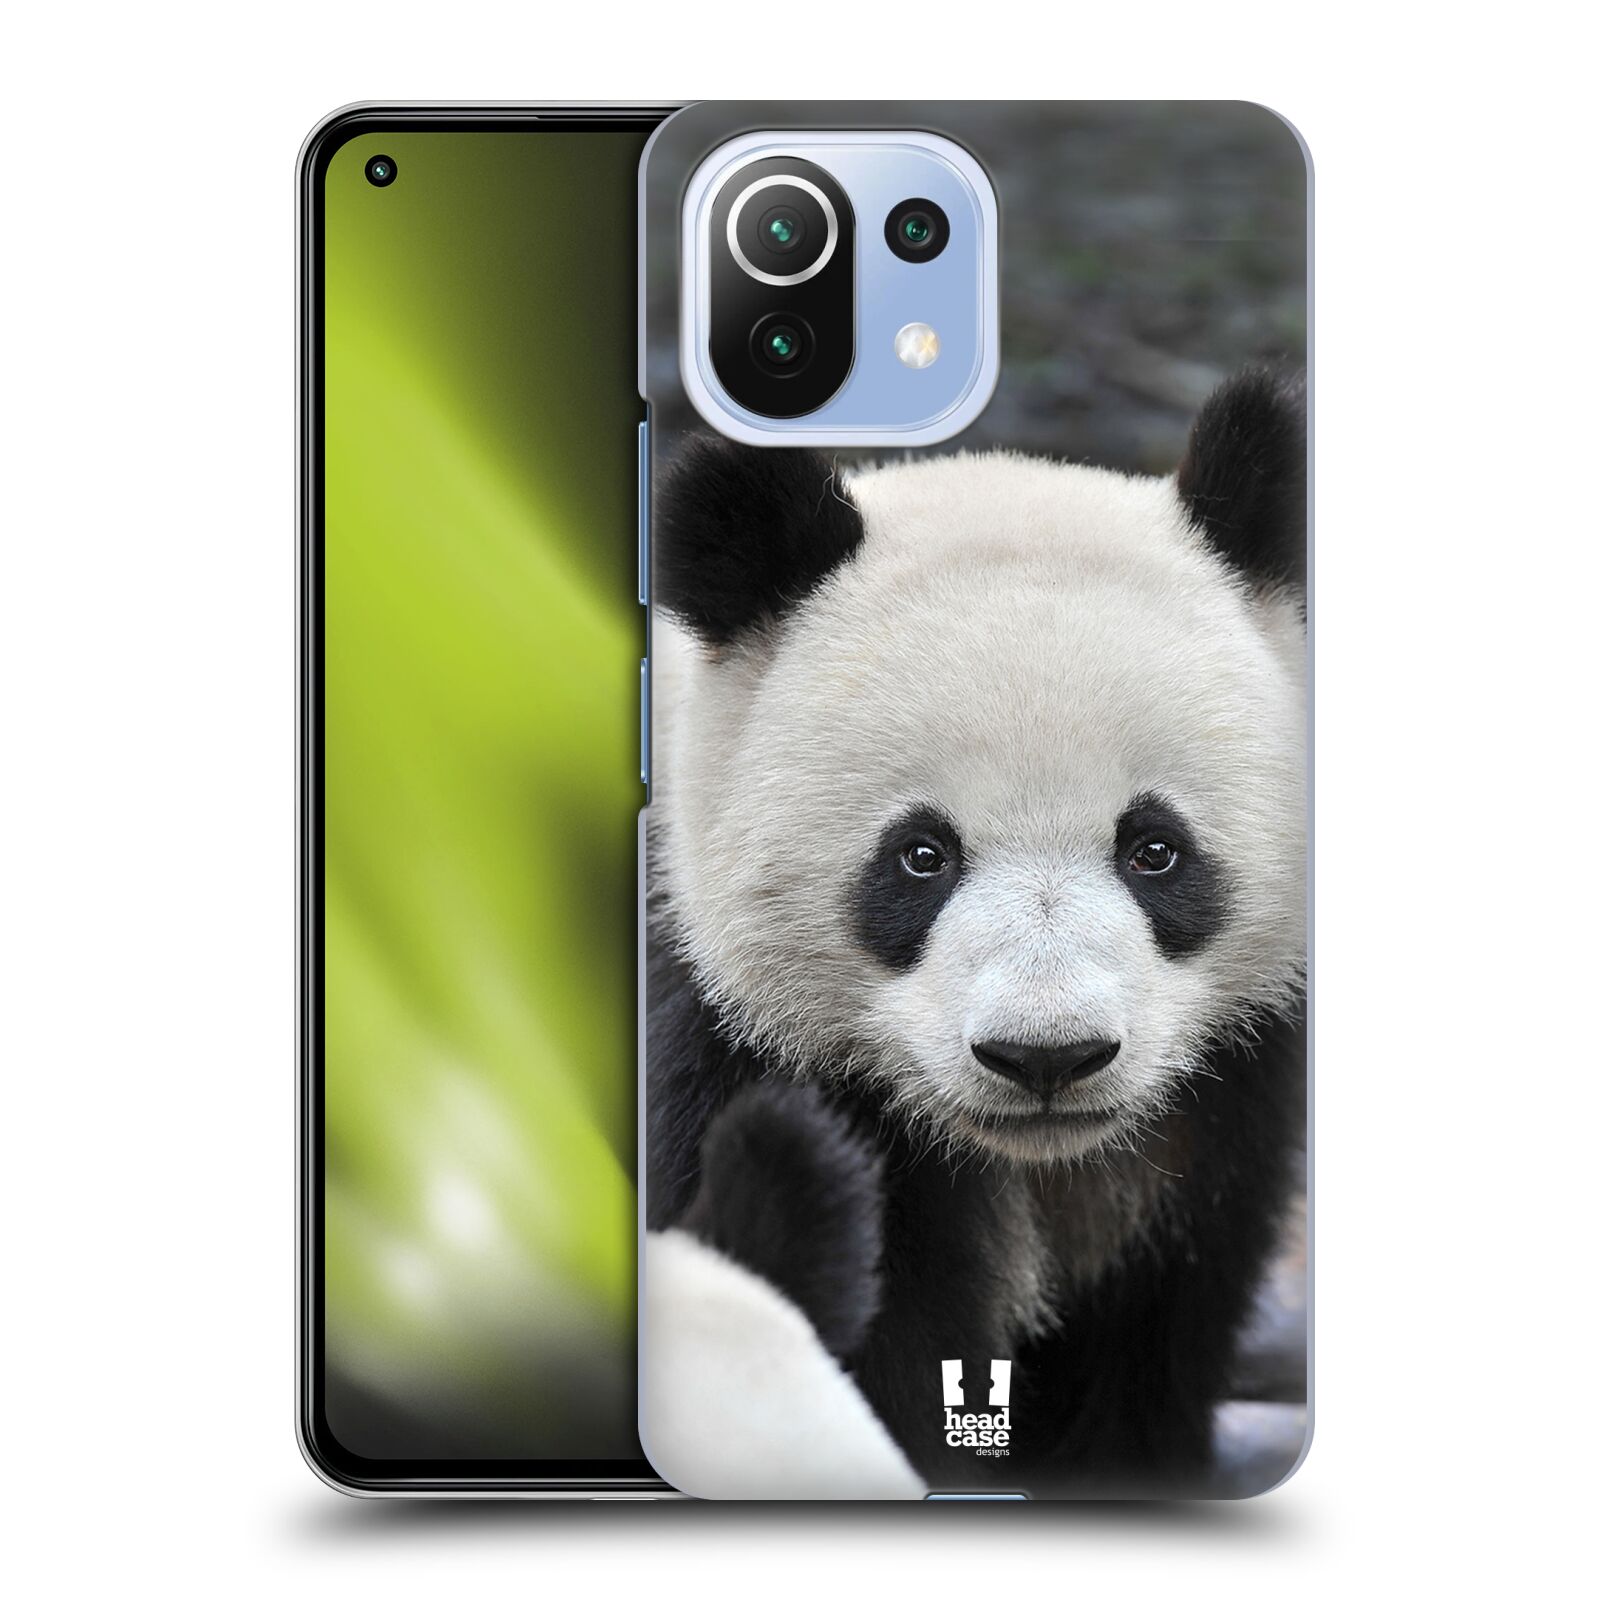 Zadní obal pro mobil Xiaomi Mi 11 Lite / Mi 11 Lite 5G - HEAD CASE - Svět zvířat medvěd panda